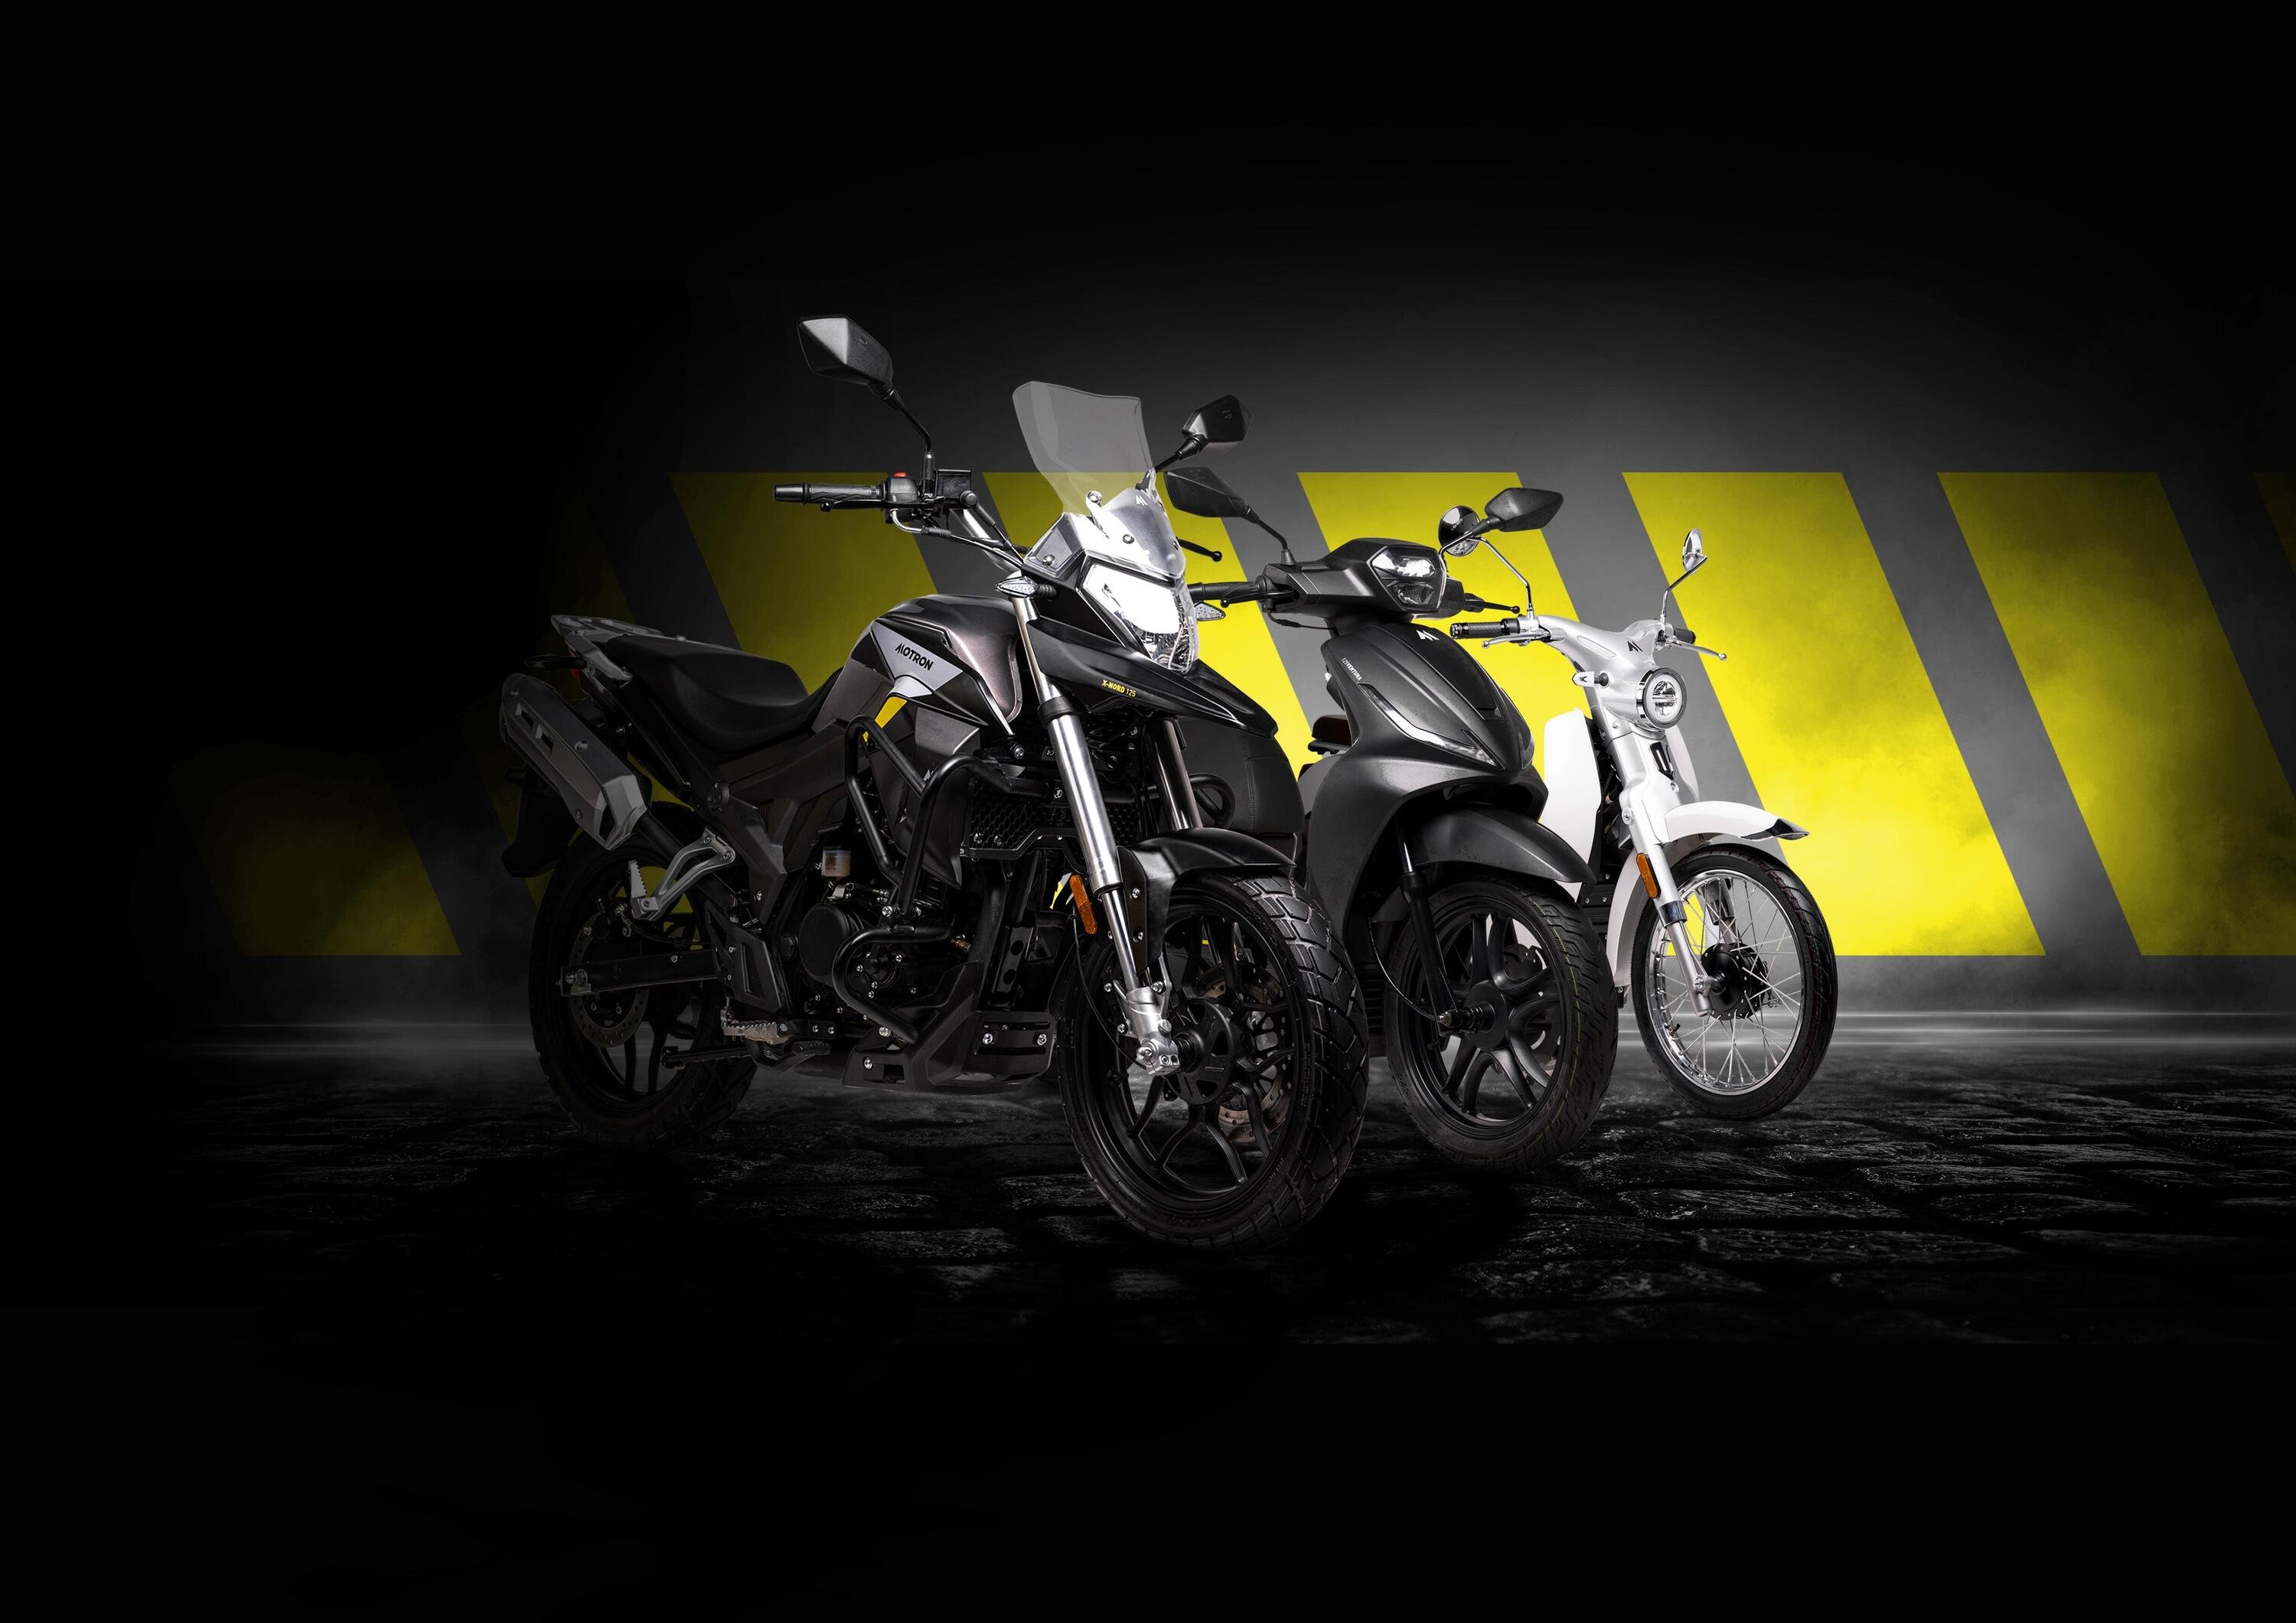 La &quot;M&quot; gialla rivela il marchio Motron Motorcycles: il Gruppo KSR espande la famiglia